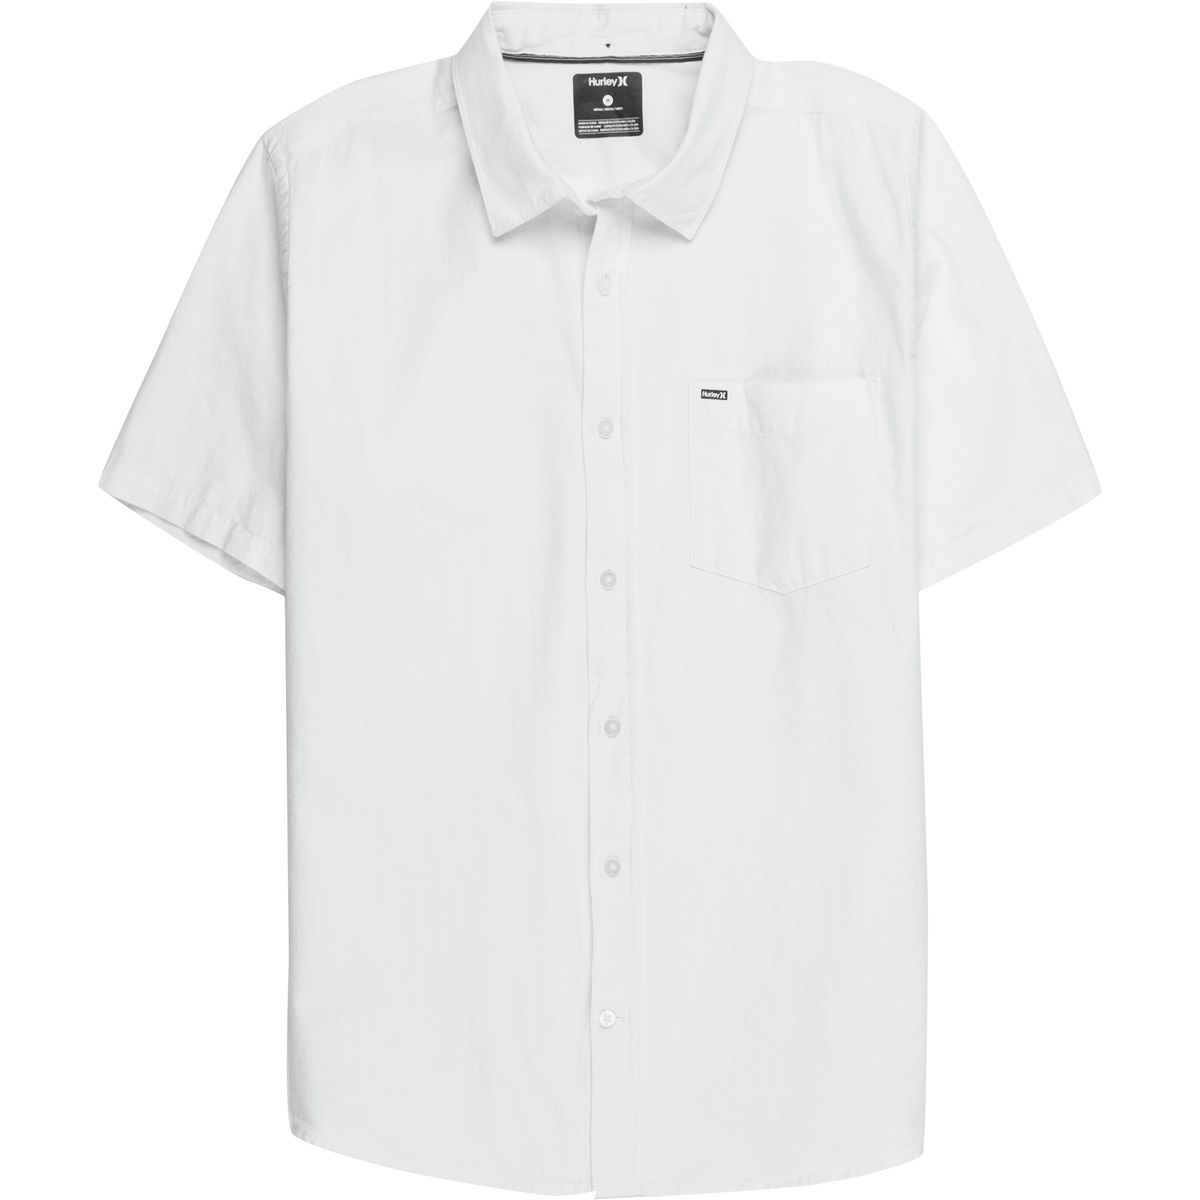 Hurley One & Only Short-Sleeve Shirt - Men's | eBay